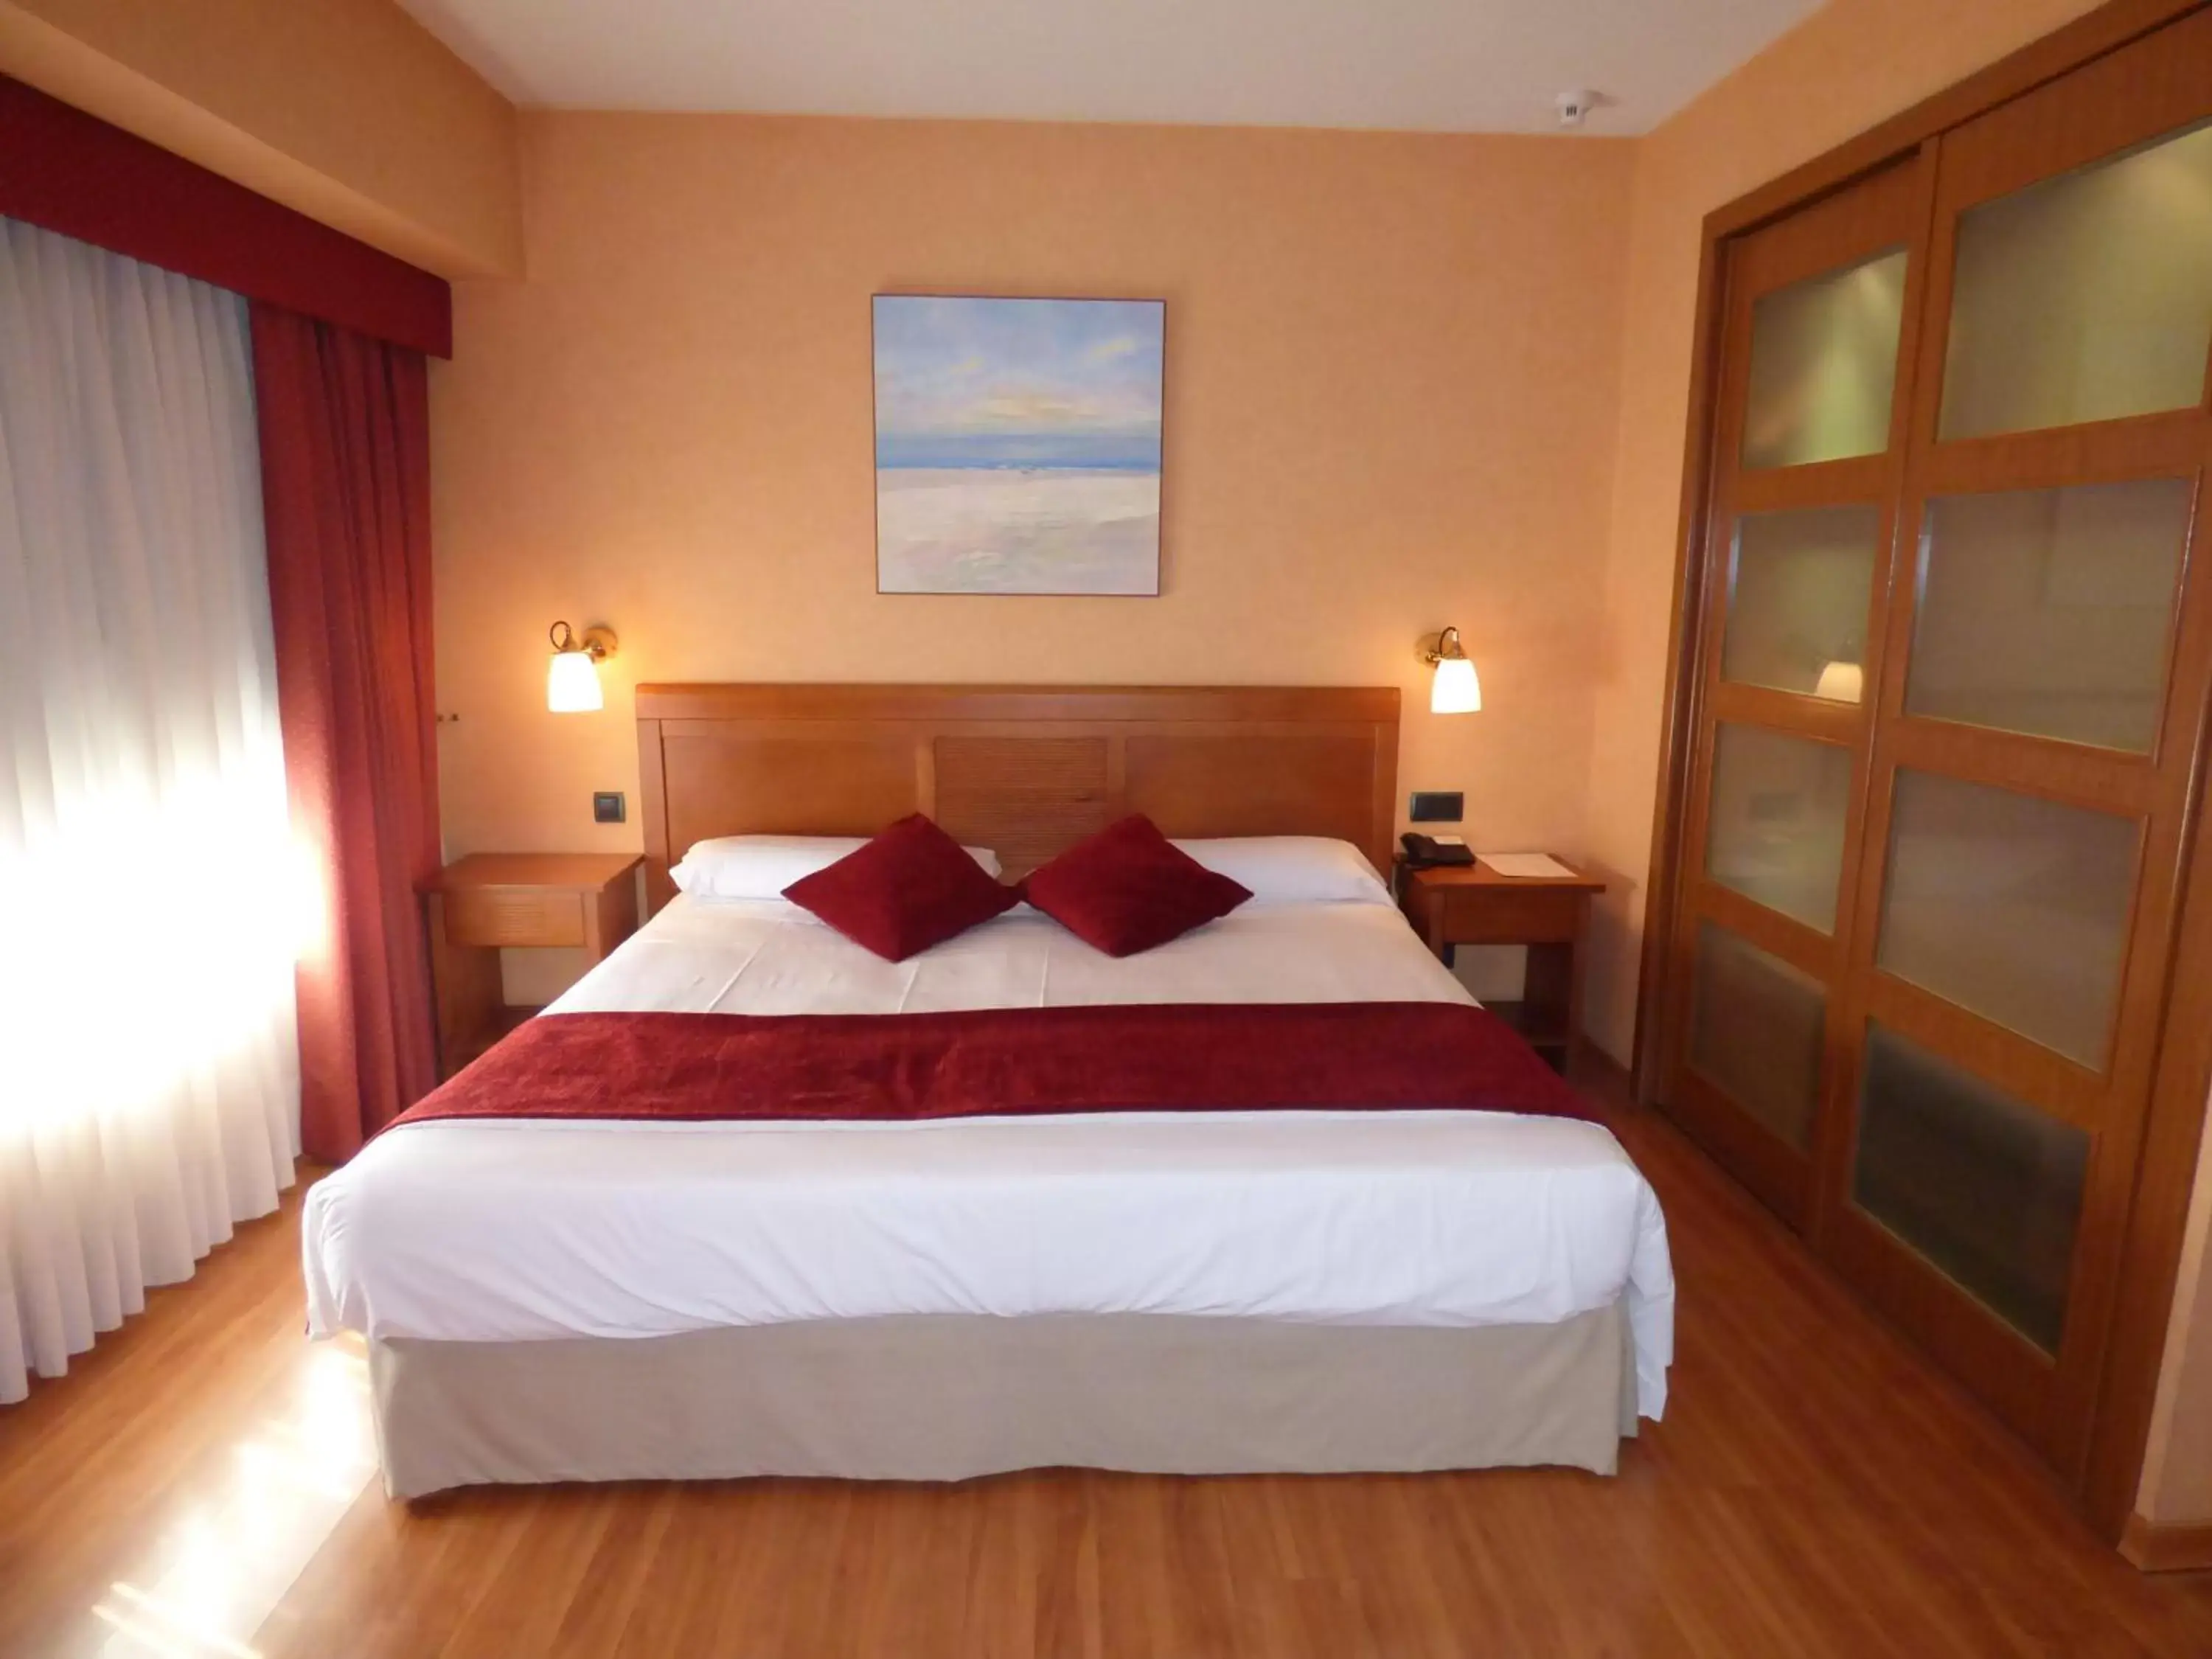 Bed, Room Photo in Eco Via Lusitana